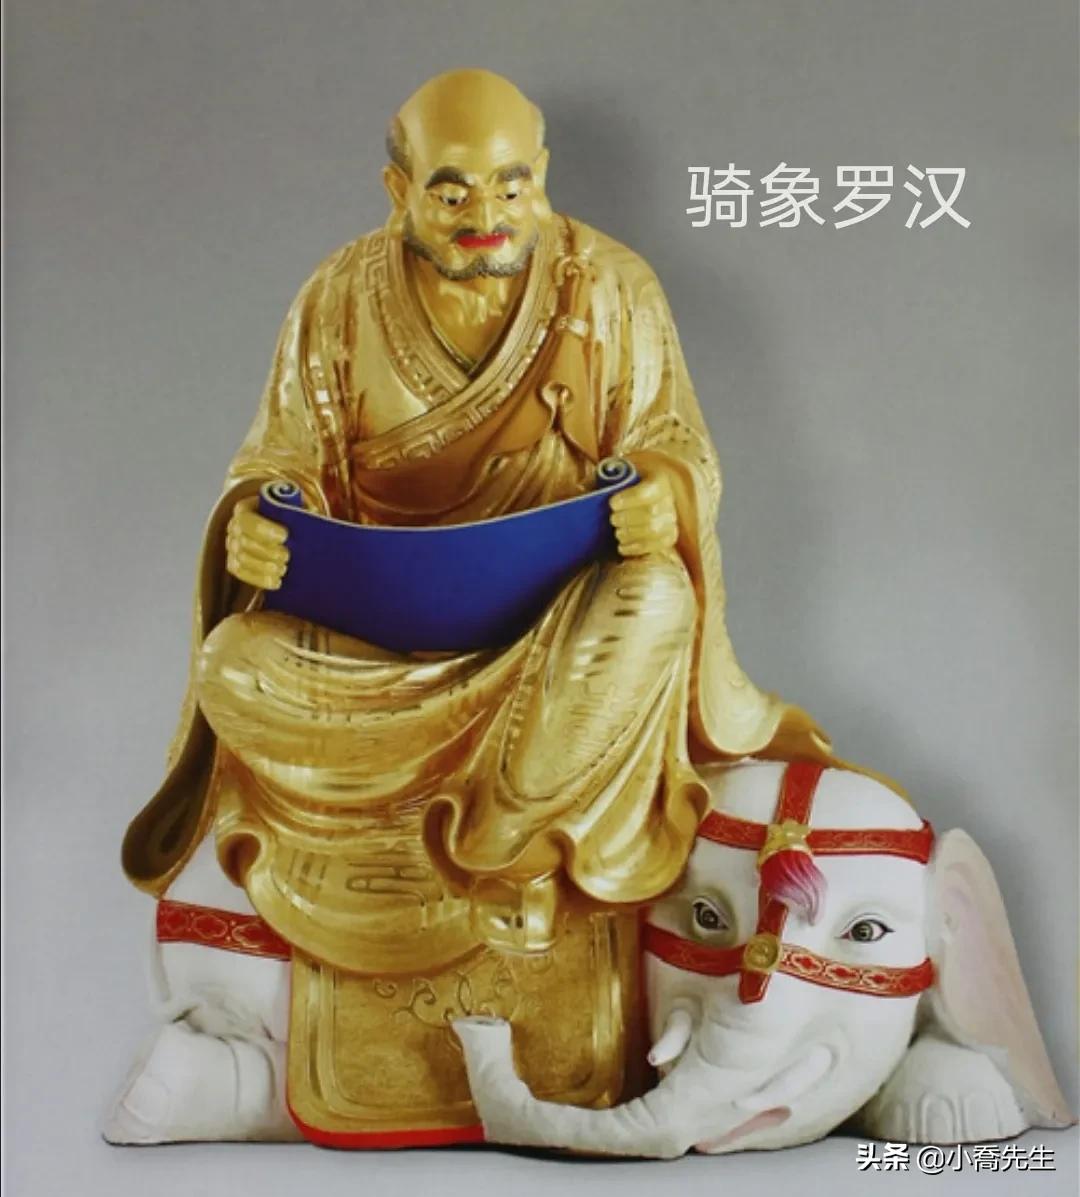 佛教中十八罗汉的排位及各自来历